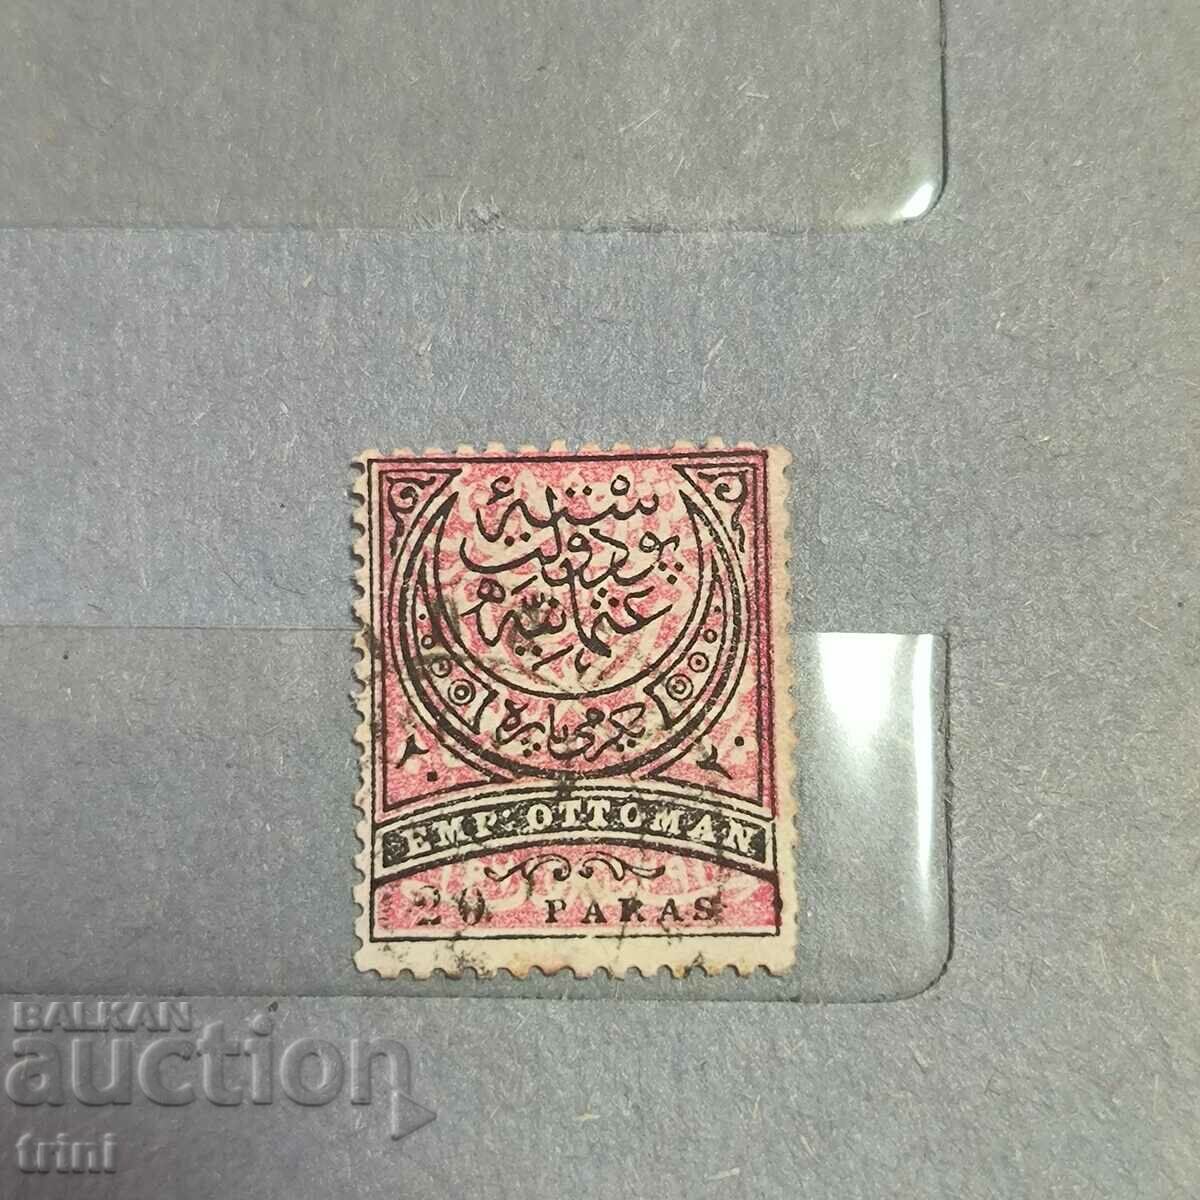 Османска империя пощенска марка 20 пара 1880 година